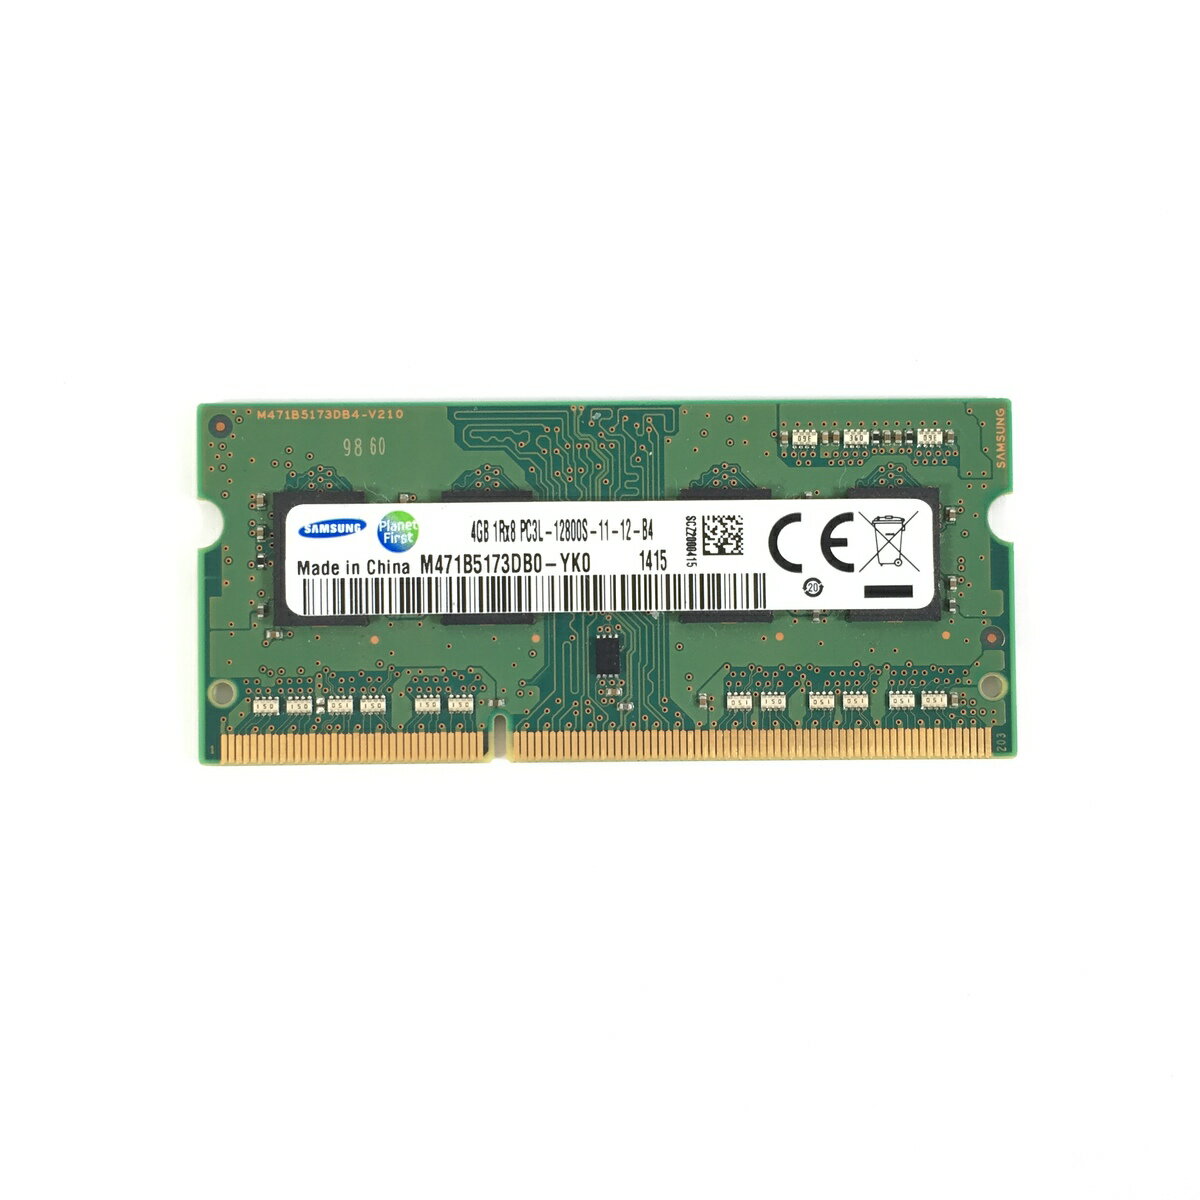 サムセン SAMSUNG 4GB 1RX8 PC3L-12800Sメモリ 1点 低電圧メモリ(1.35 V)  SO-DIMM 204pin ノートパソコン用メモリ 増設メモリ 型番：M471B5173DB0-YK0 両面実装 (1Rx8) 